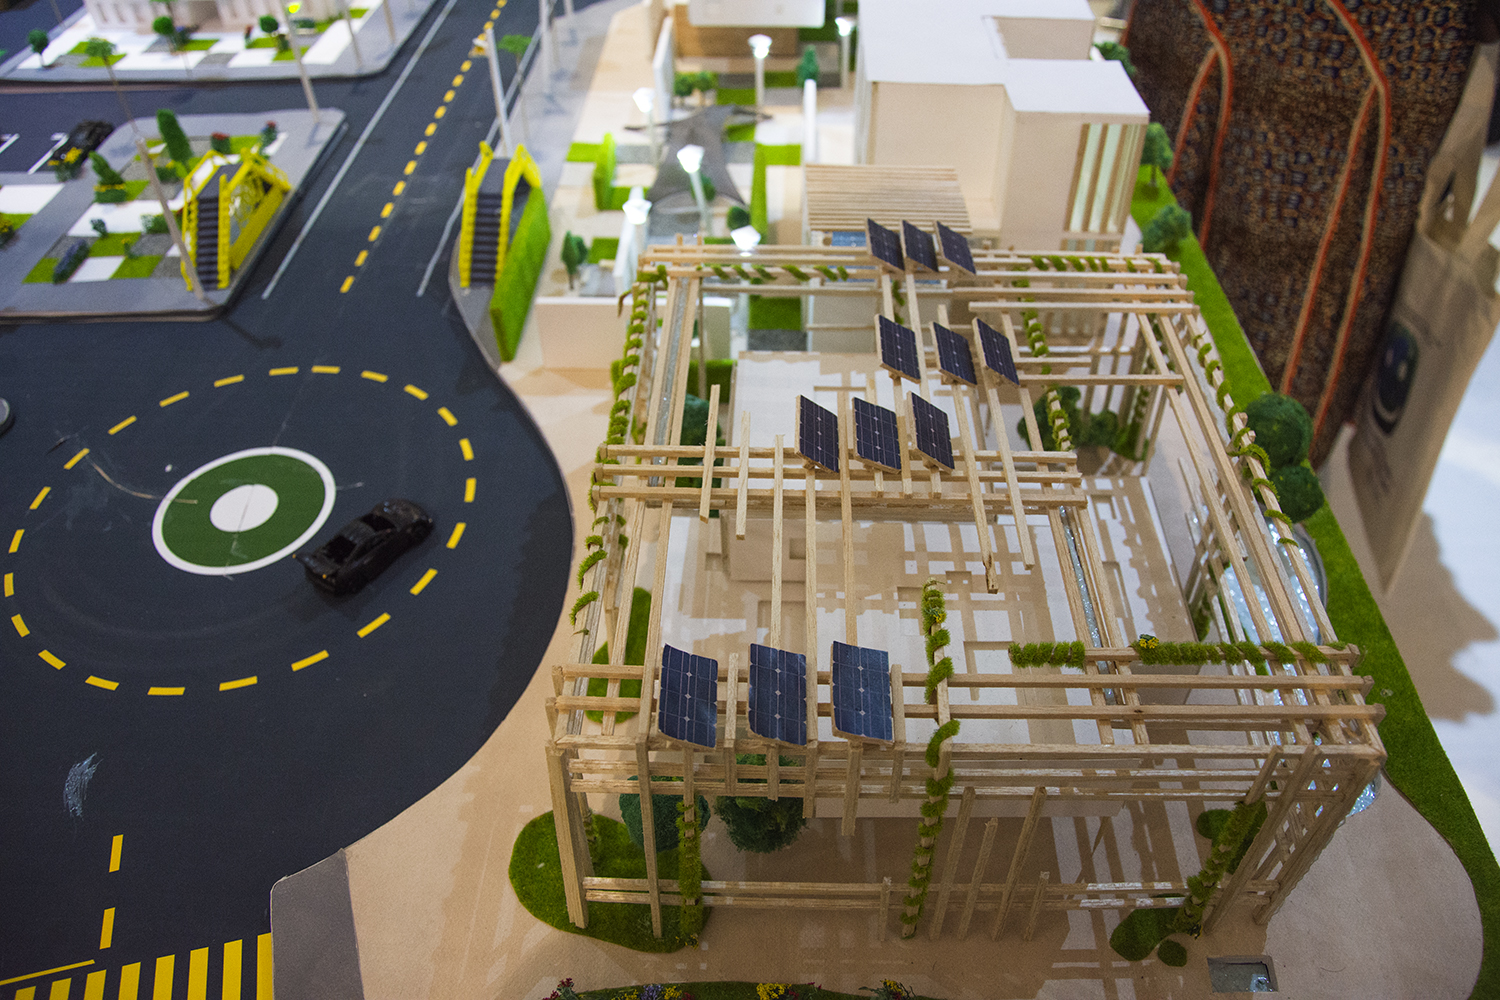 Une maquette de la smart city pensée par les étudiants de l’université de Rabat : les panneaux solaires